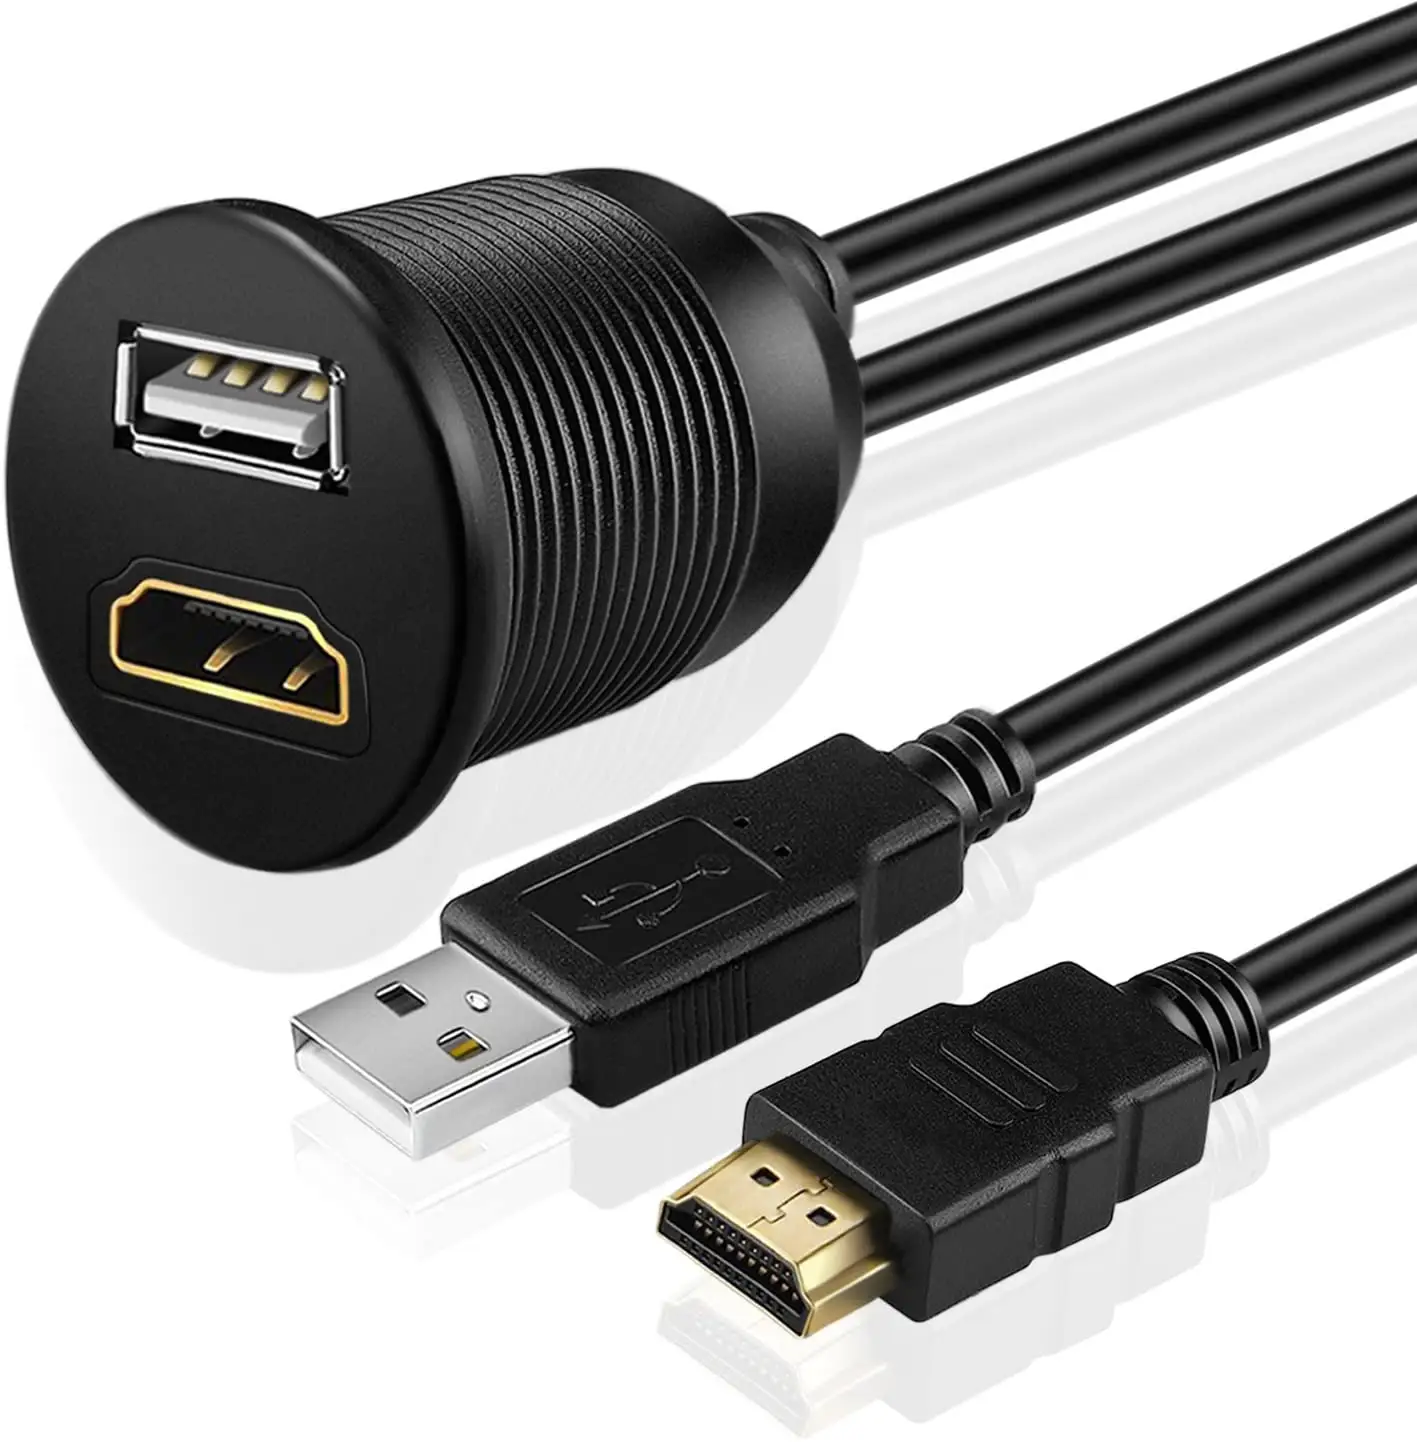 Port Ganda Premium Kabel HD 4K USB 2.0 Berlapis Emas, Kotak TV Android 1.8M 28AWG dengan Port Ganda